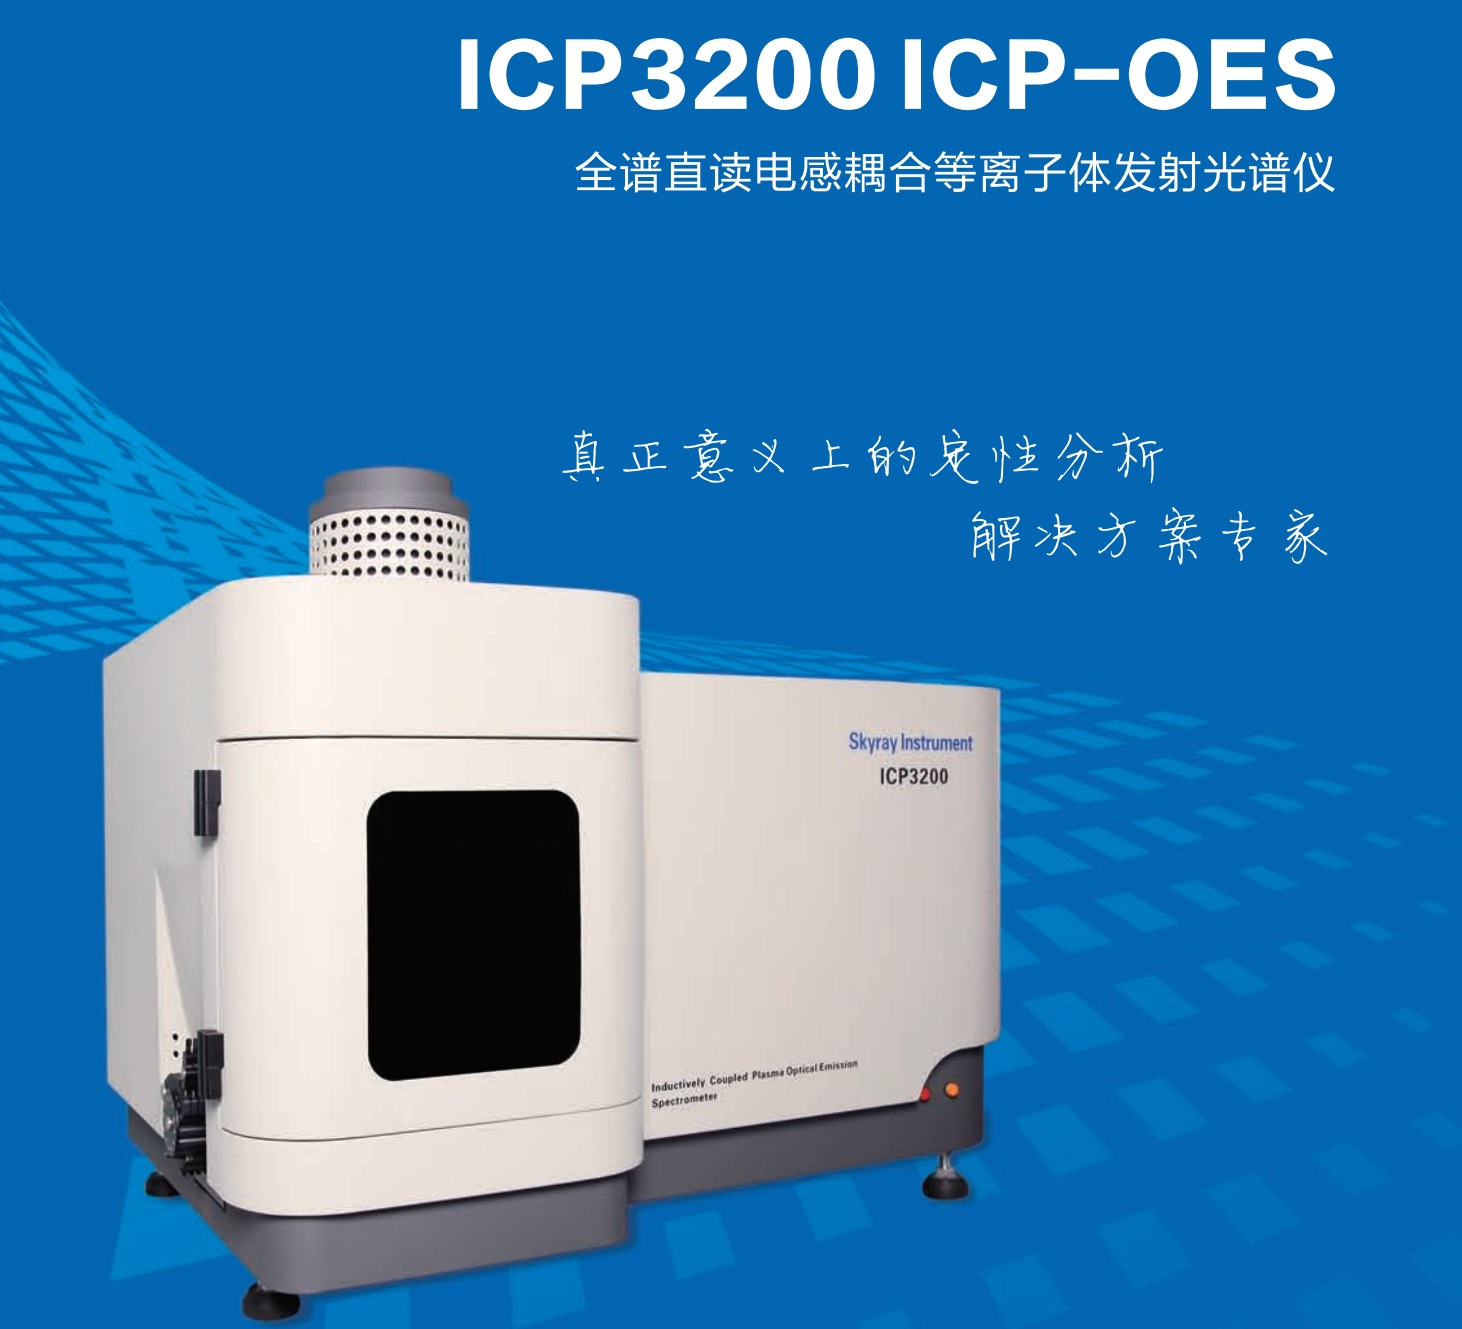 ICP 3200 ICP-OES